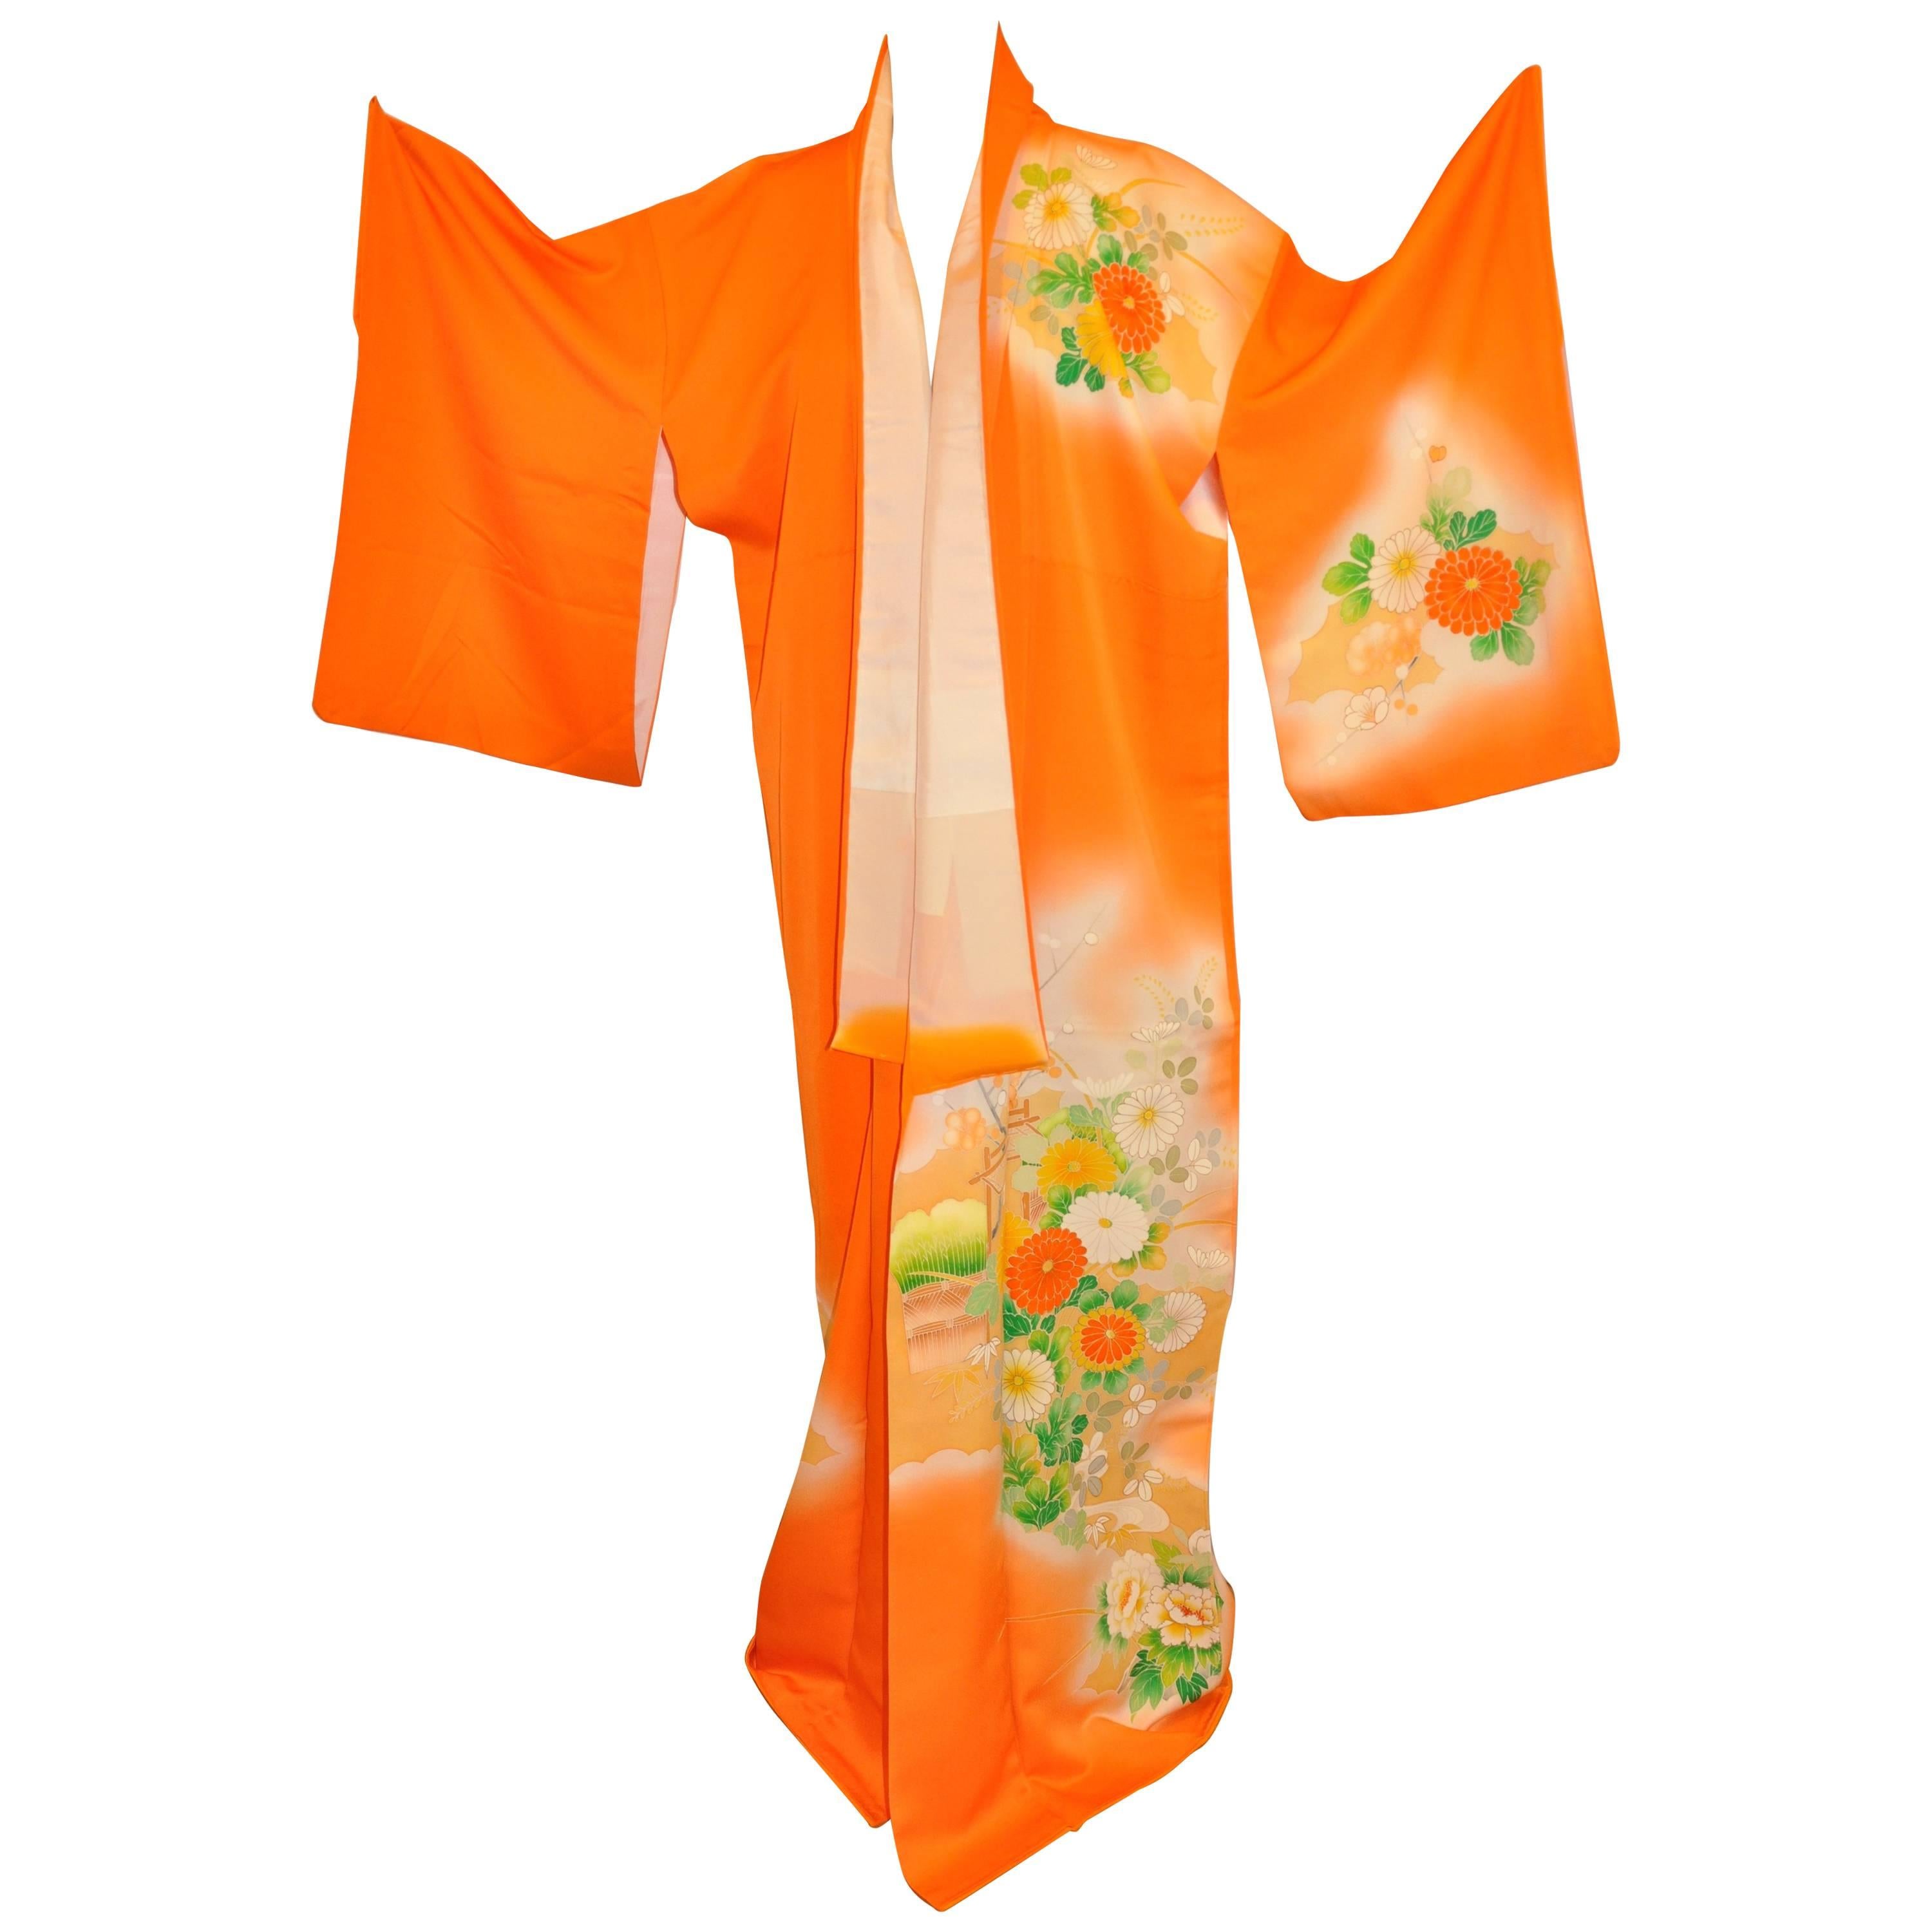 Warmiger Kimono aus bernsteinfarbener Seide mit mehrfarbigem Blumenmuster